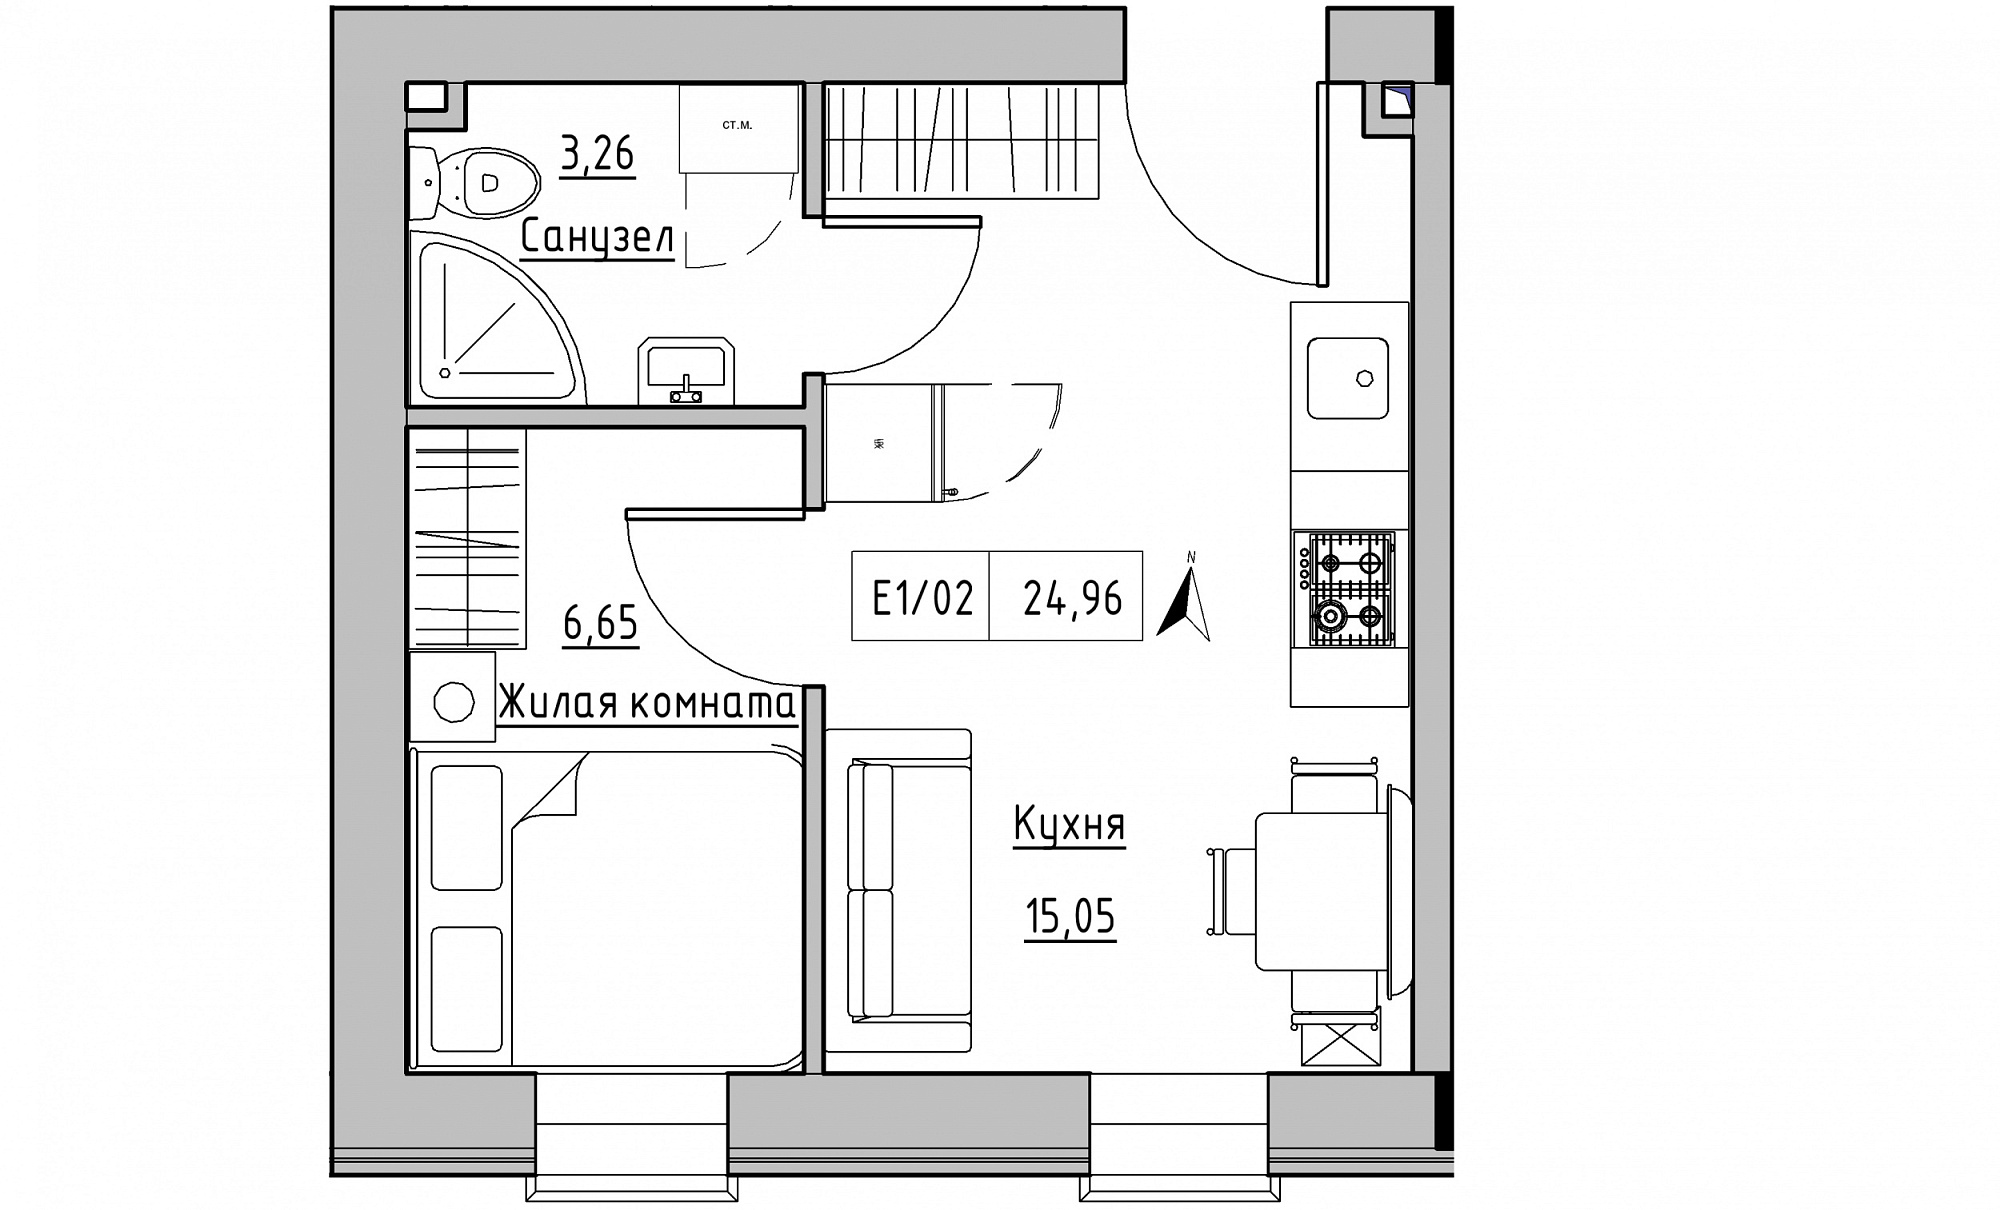 Планировка 1-к квартира площей 24.96м2, KS-015-02/0012.